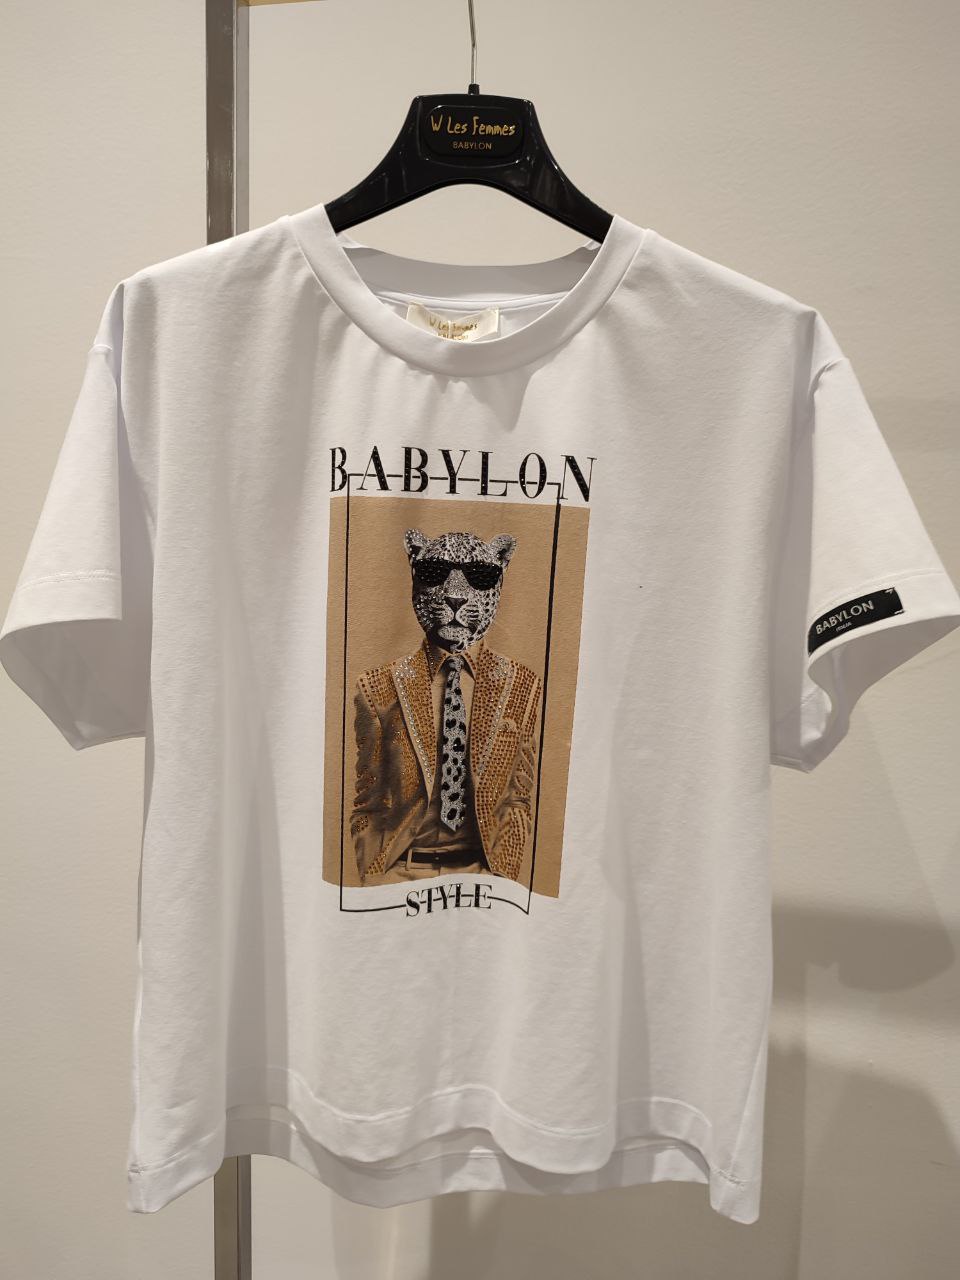 Итальянская одежда, бренд Babylon, арт. 73254520